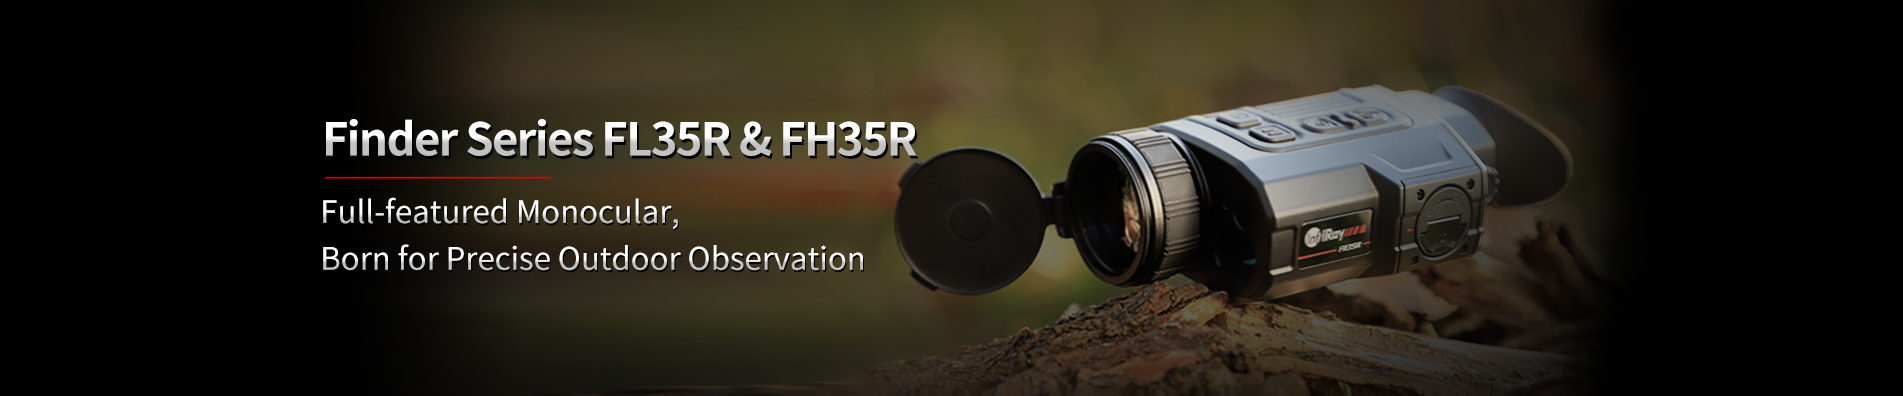 Finder FH35R & FL35R